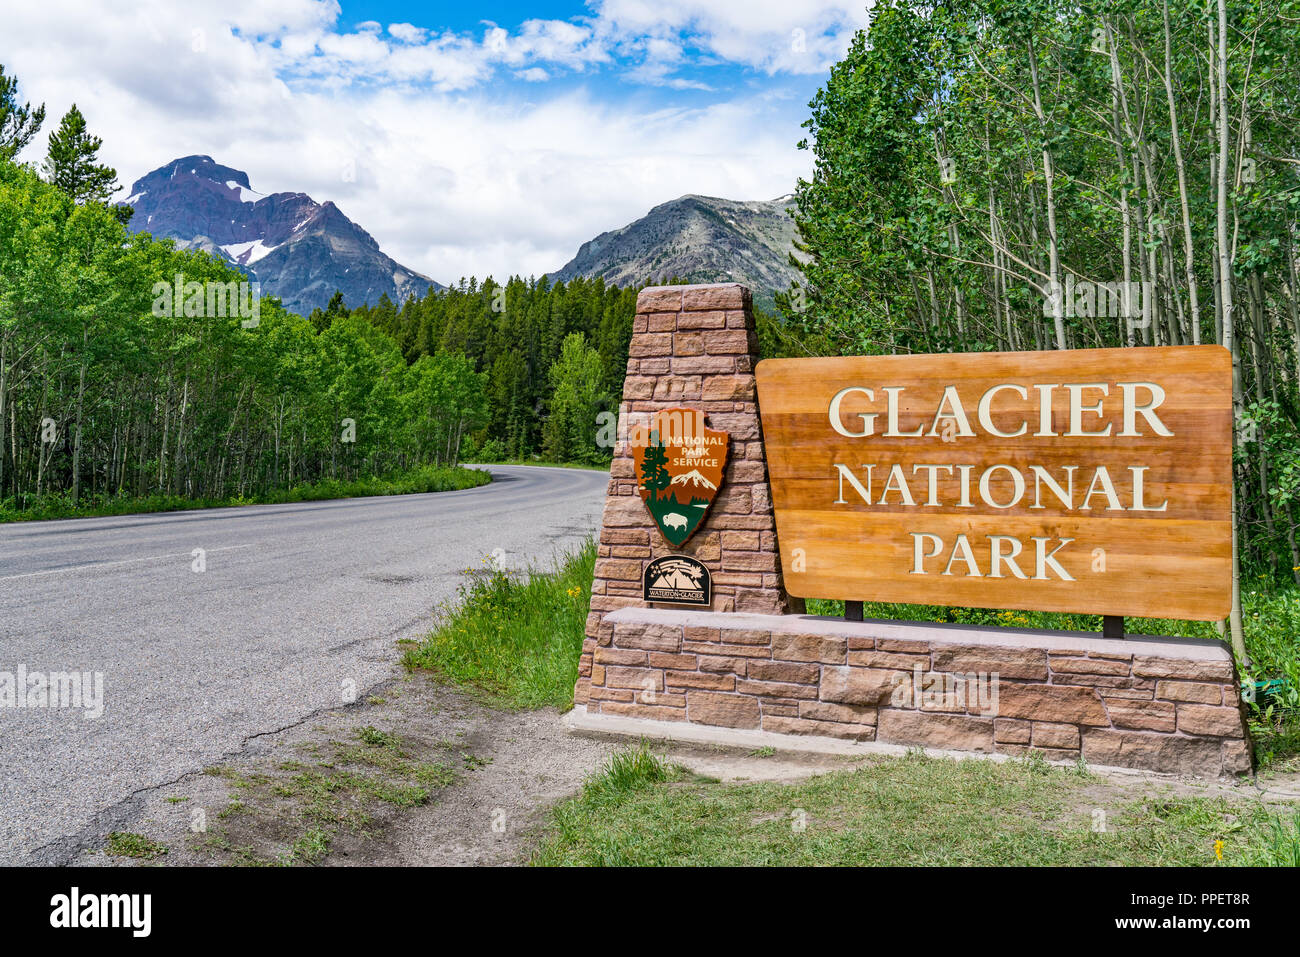 BABB, MT - 26 juin 2018 : panneau de bienvenue à l'entrée de Glacier National Park, Montana Banque D'Images